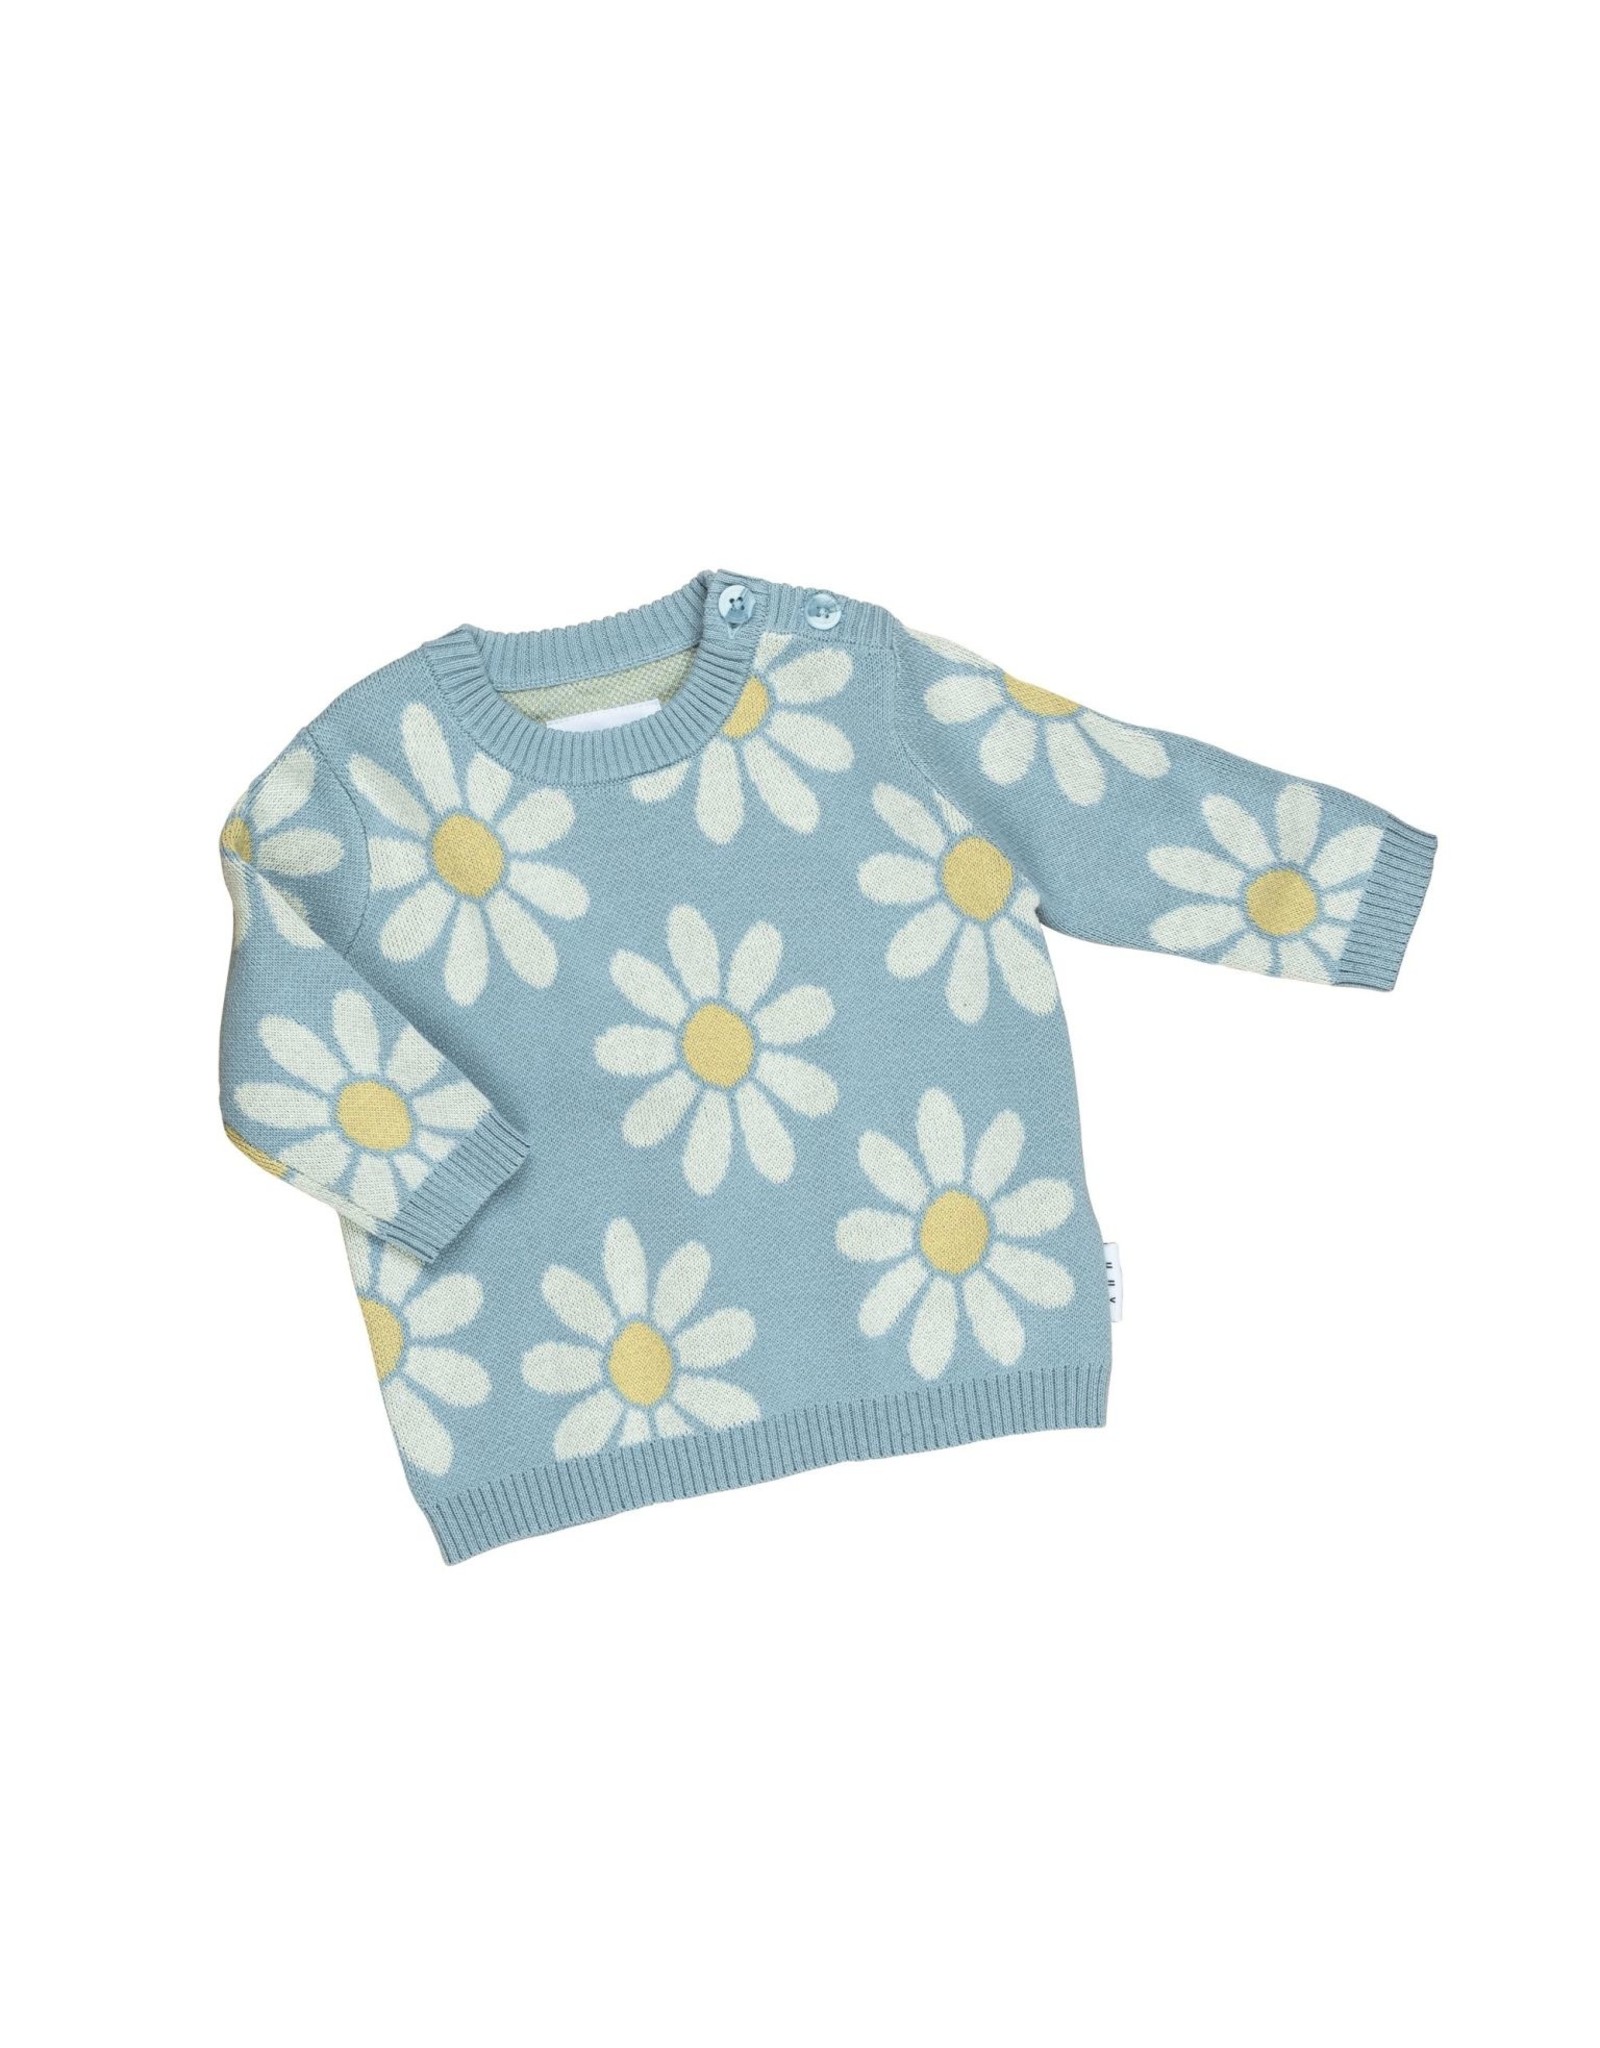 Huxbaby daisy sweater- blue